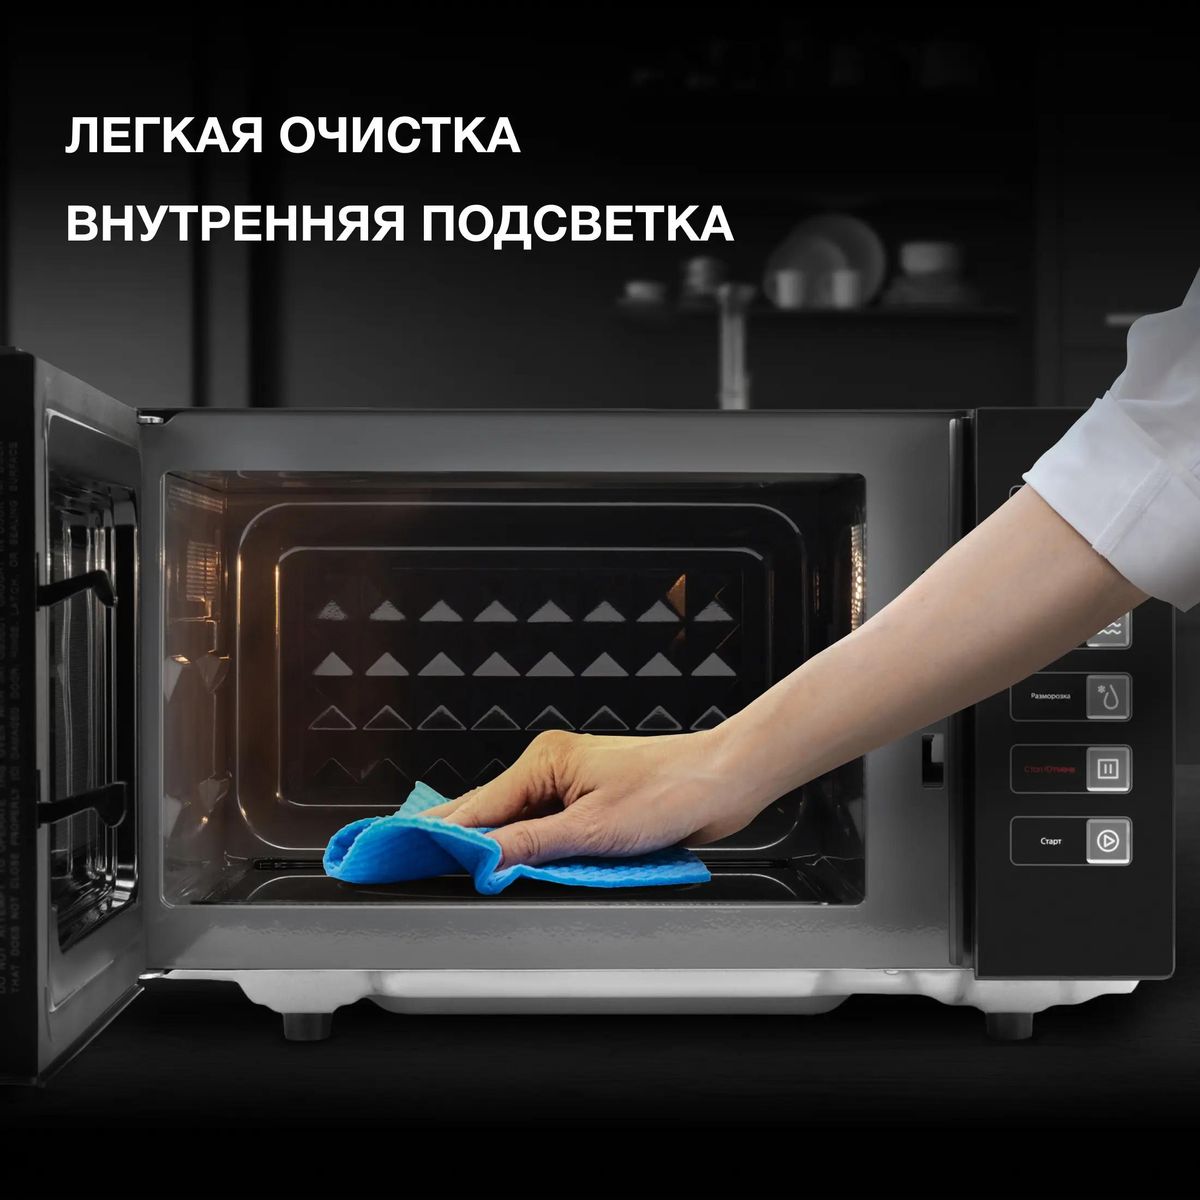 Микроволновая печь Hyundai HYM-D3008, 800Вт, 23л, черный